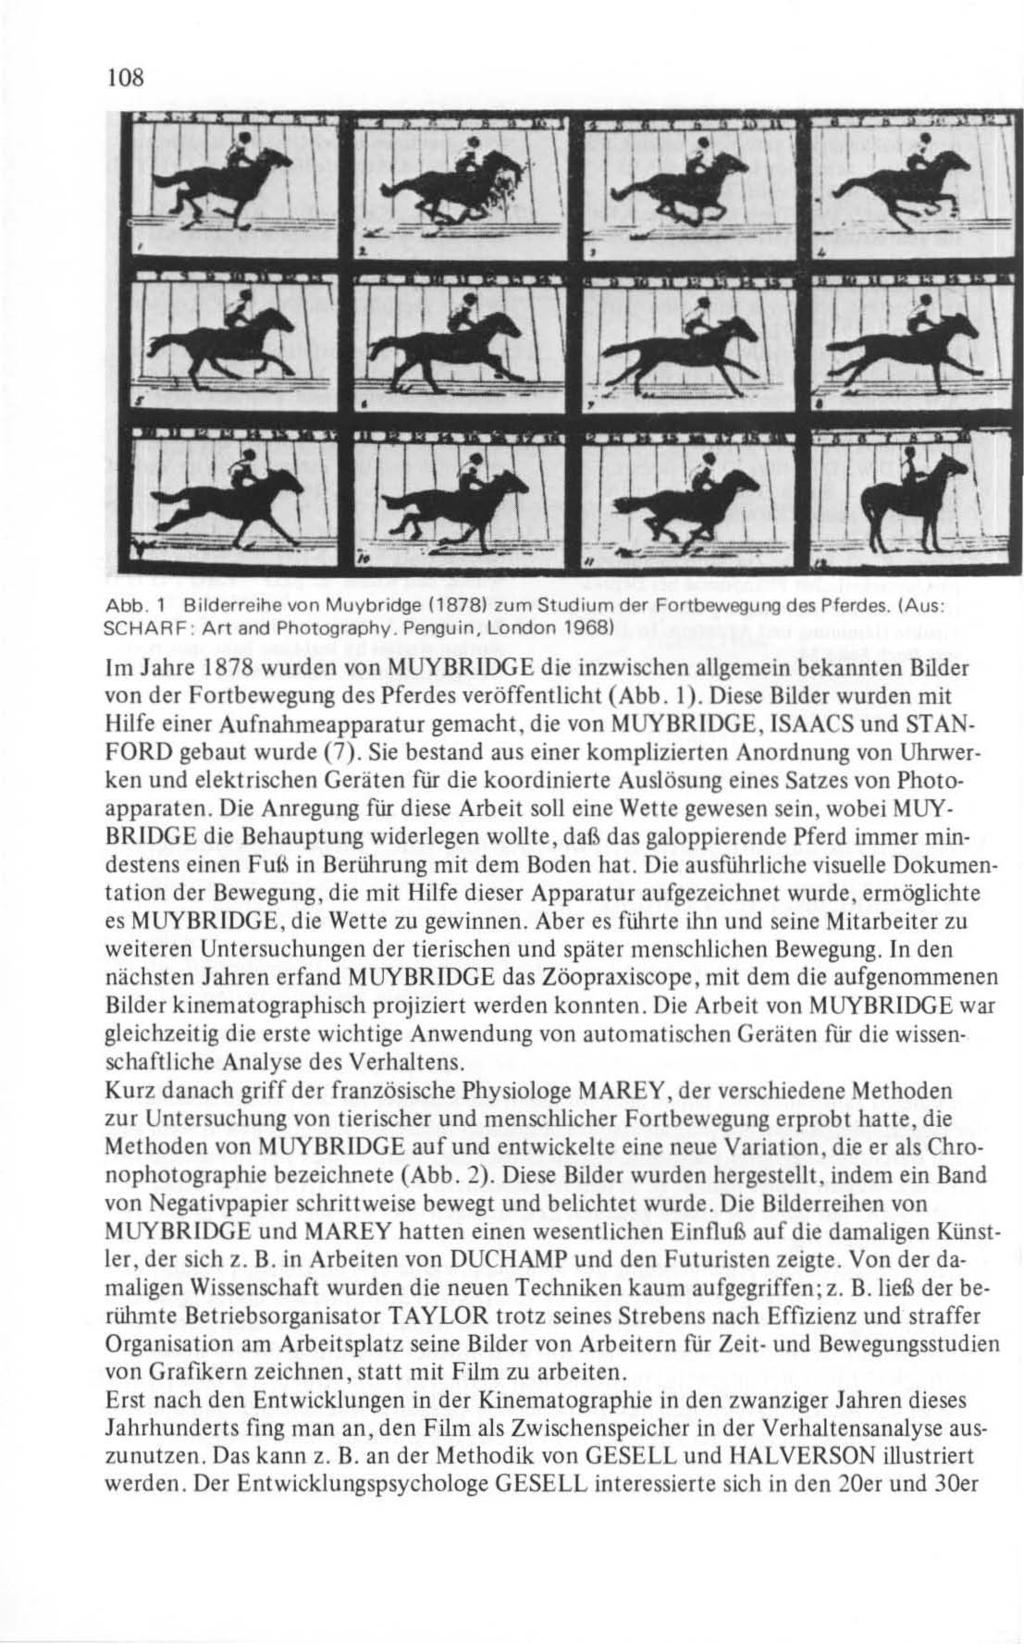 108 Abb. 1 Bilderreihe von Muybridge (1878) zum Studium der Fortbewegung des Pferdes. laus: SCHARF : Art and Photography.